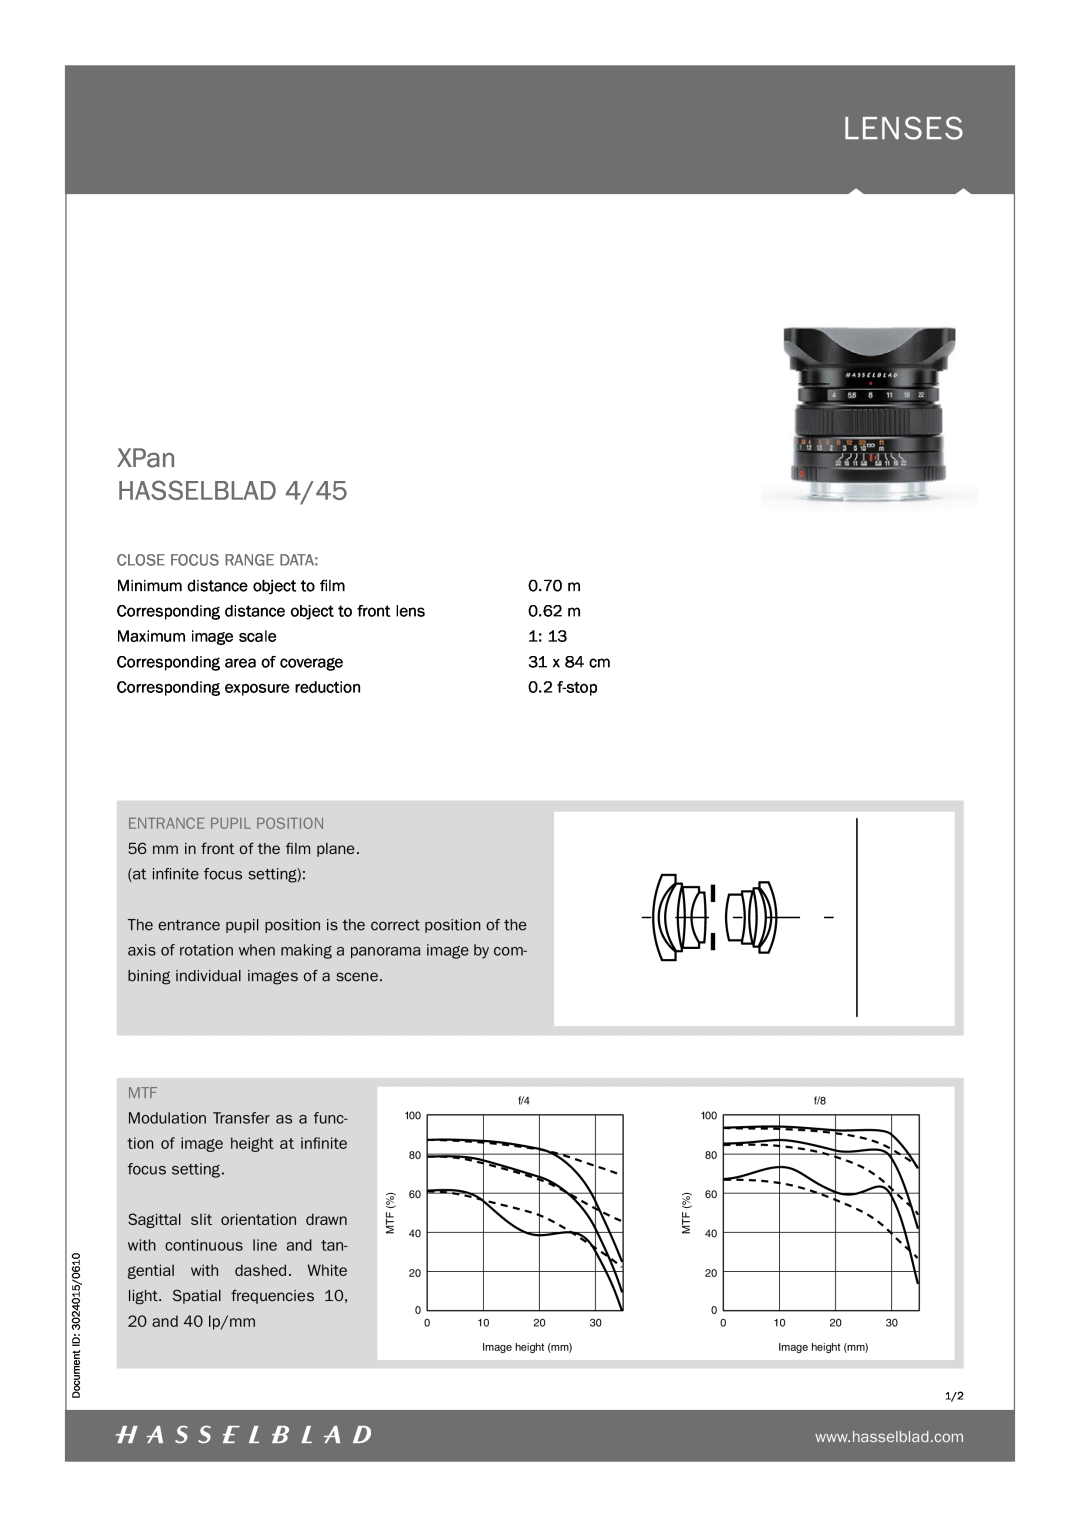 Hasselblad manual Lenses, XPan HASSELBLAD 4/45, Close Focus Range Data, Entrance Pupil Position 